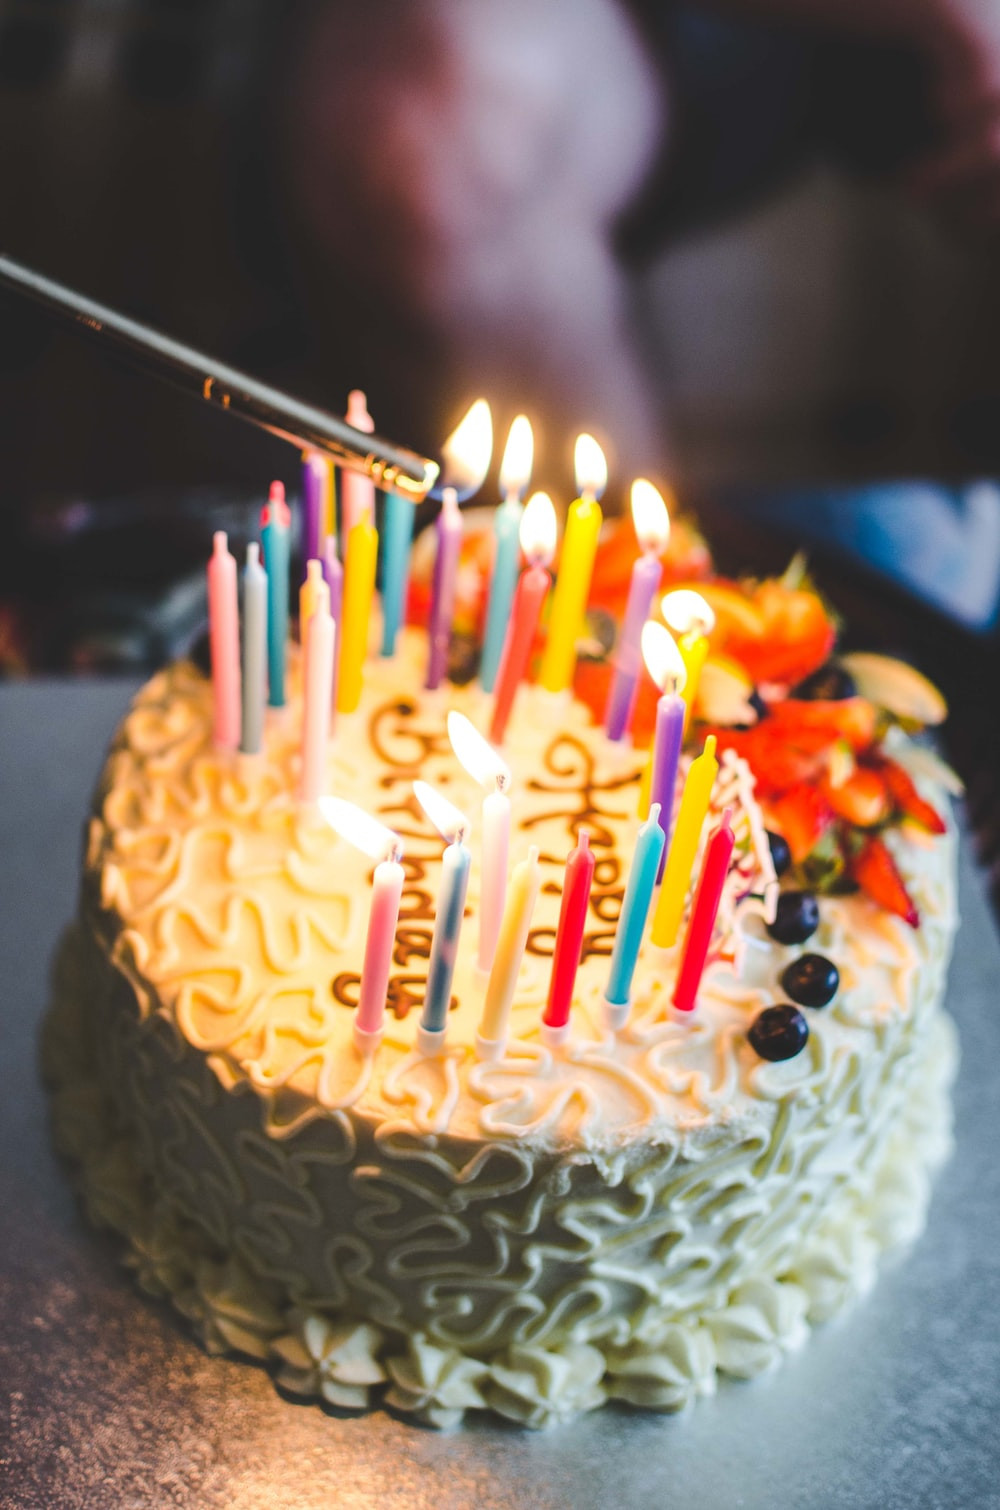 Photo Of Birthday Cake
 icing cake on table photo – Free Birthday cake Image on